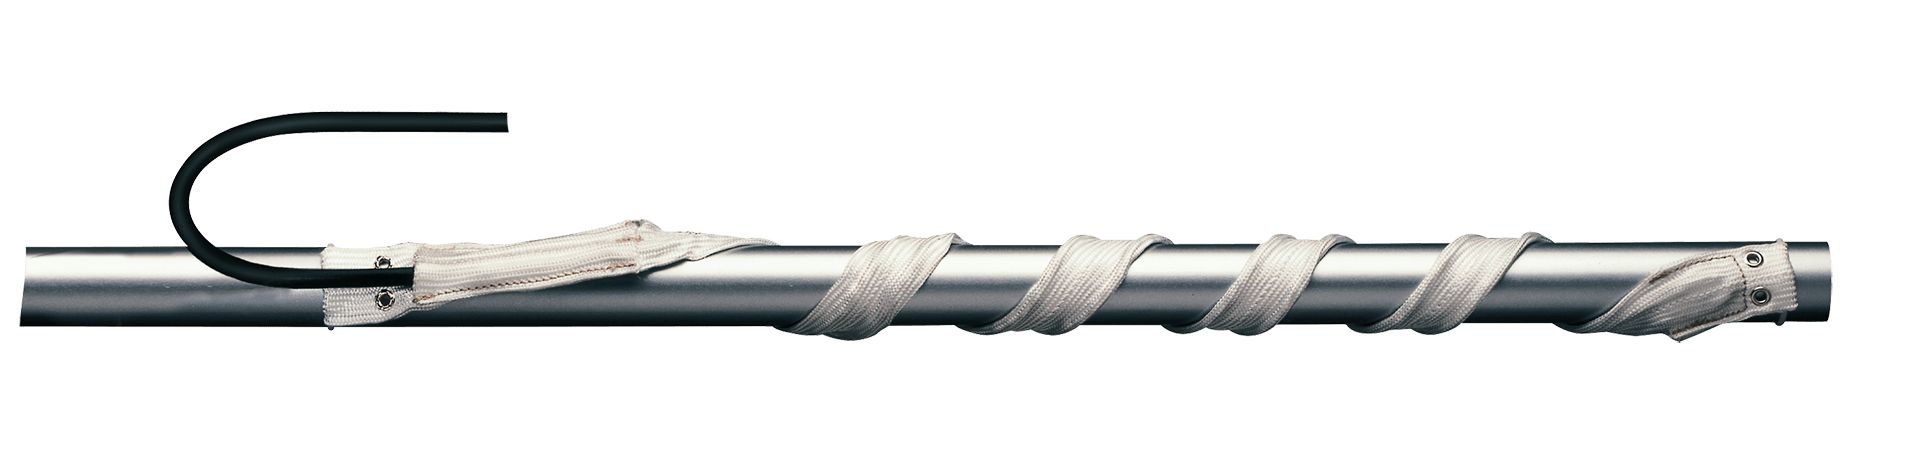 Câbles chauffants - eltherm - jusqu'à 450 °c - elw-hs_0